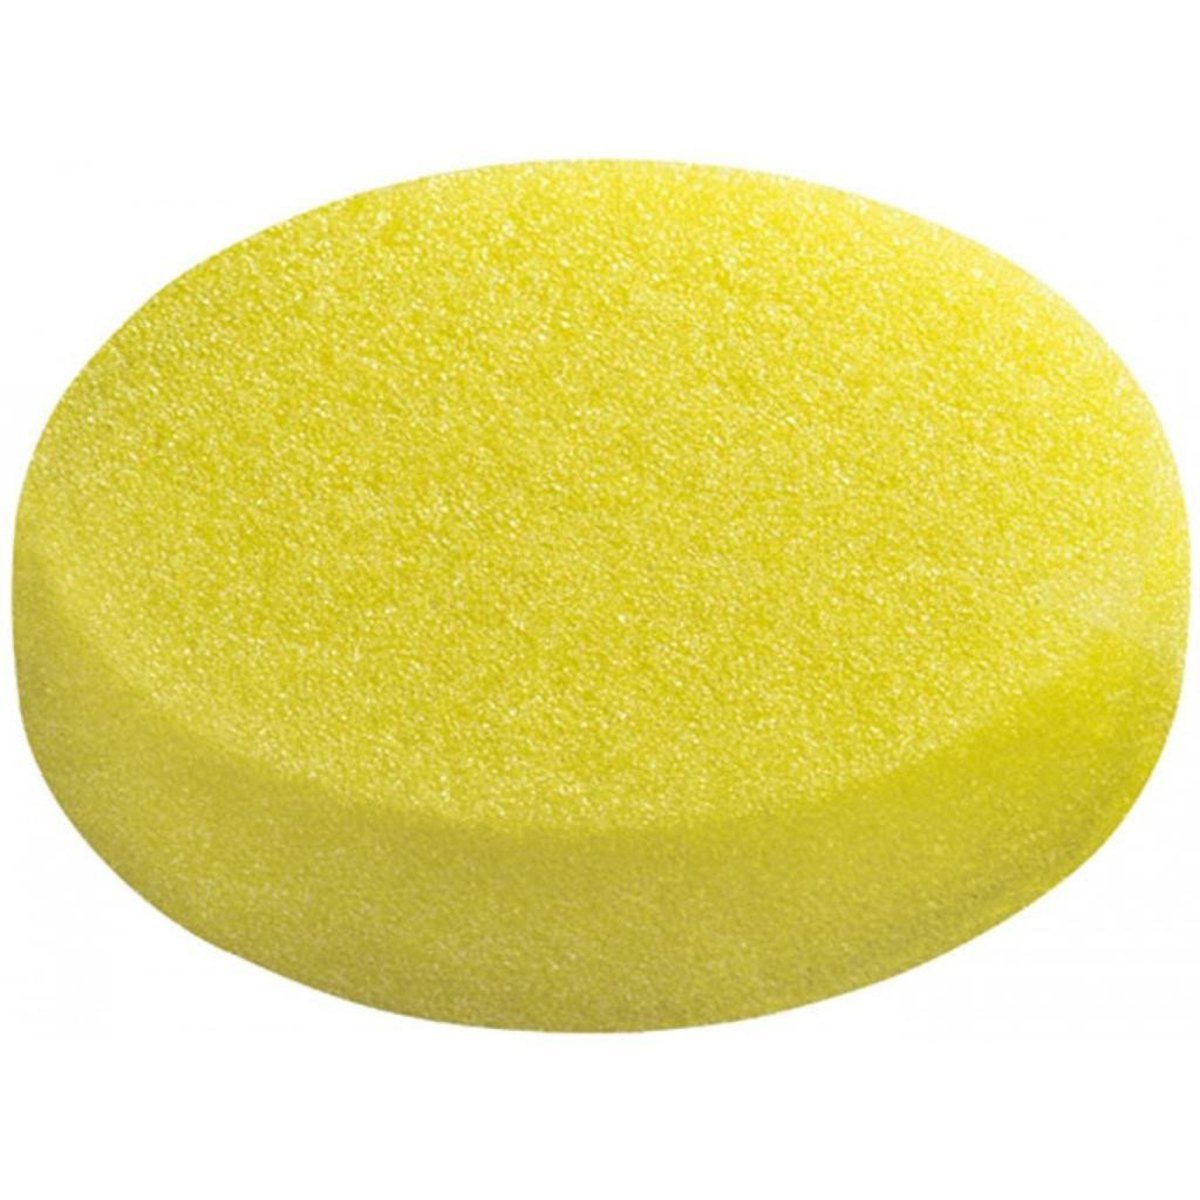 Coarse Polishing Sponge, Yellow